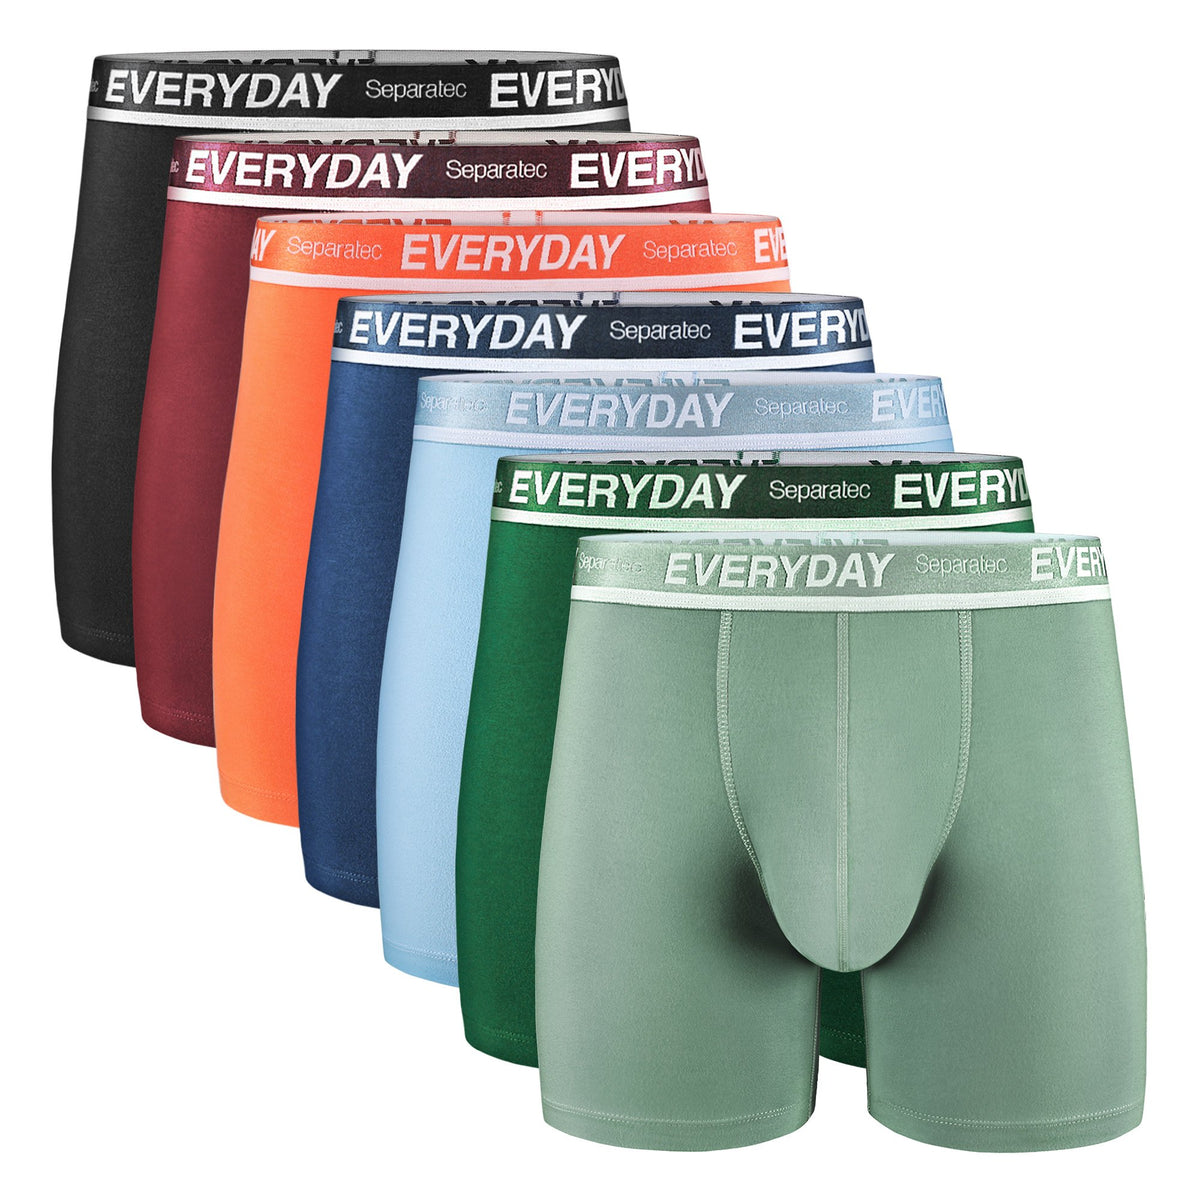 Separatec Men's Comfortable Soft Cotton Dual Pouch Colorful Underwear -  Separatec tech